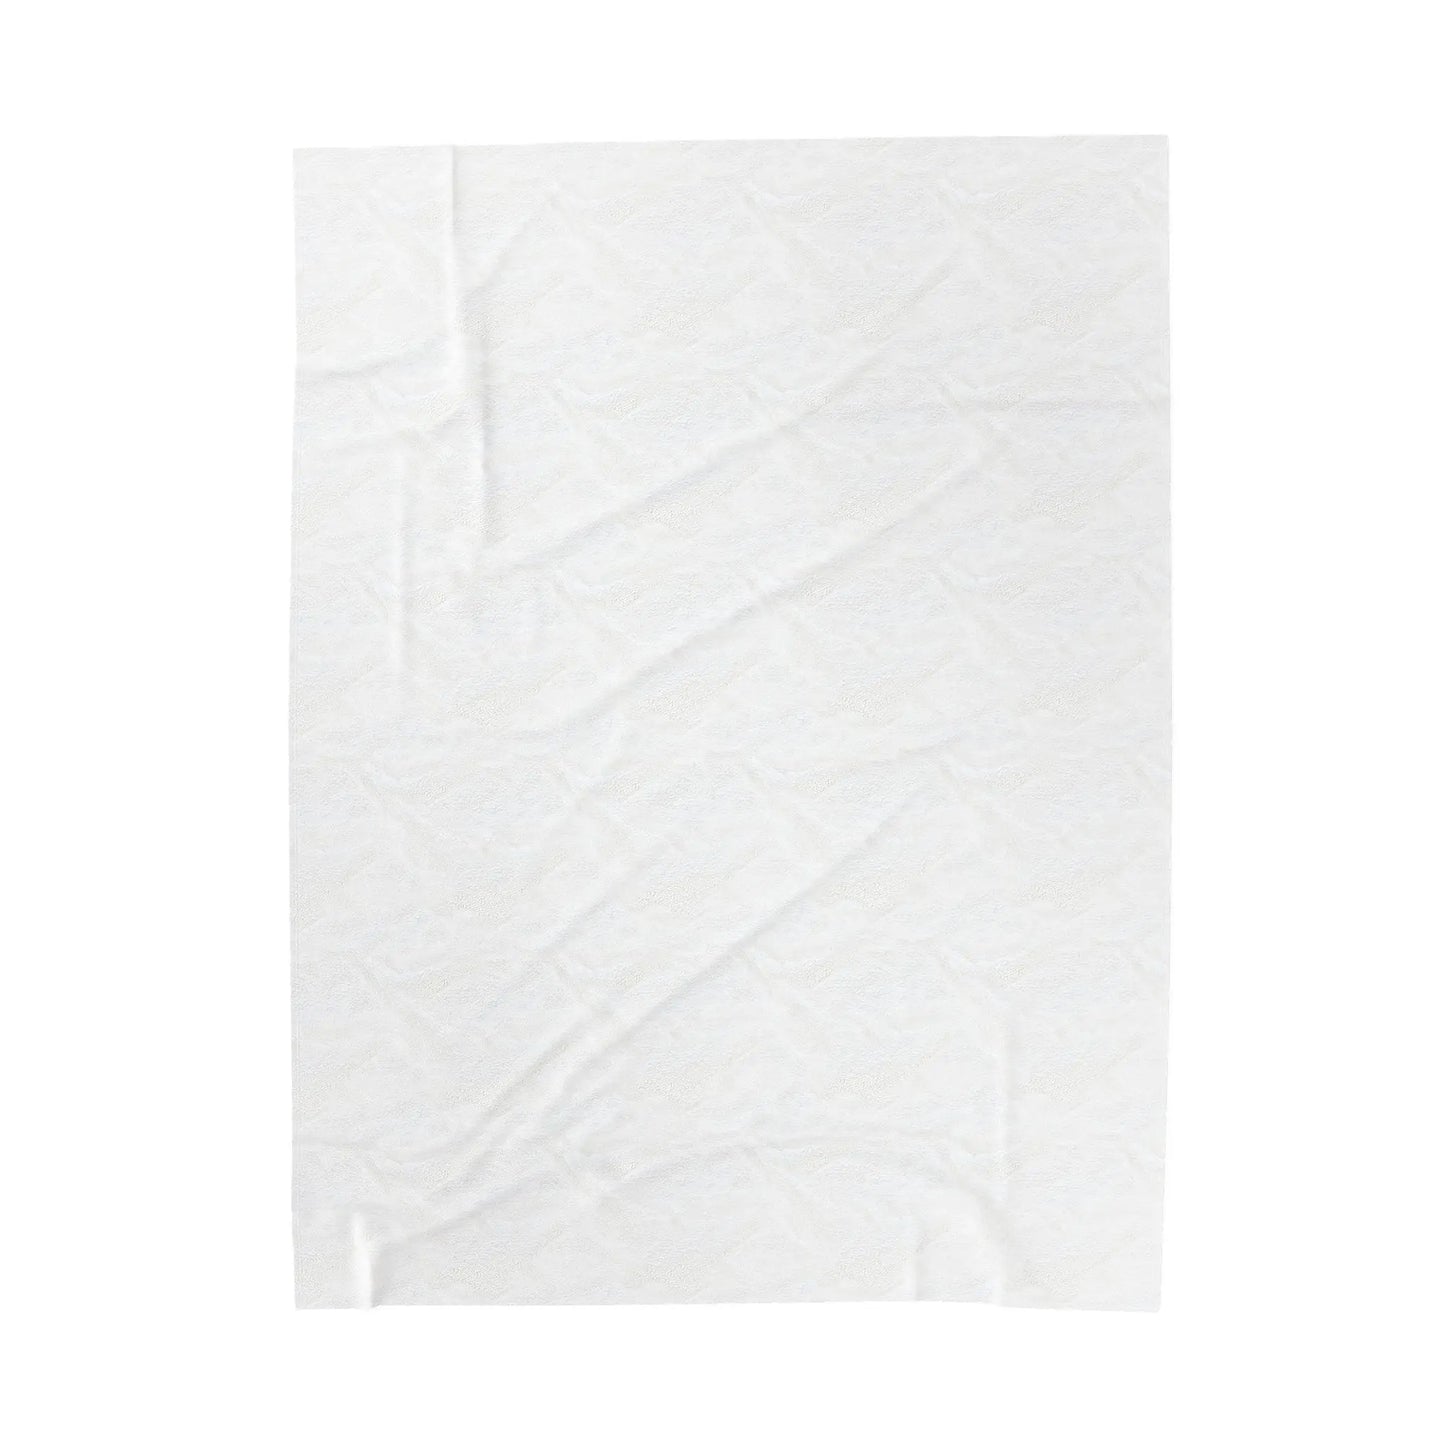 Velveteen Plush Blanket - An Initial Impression